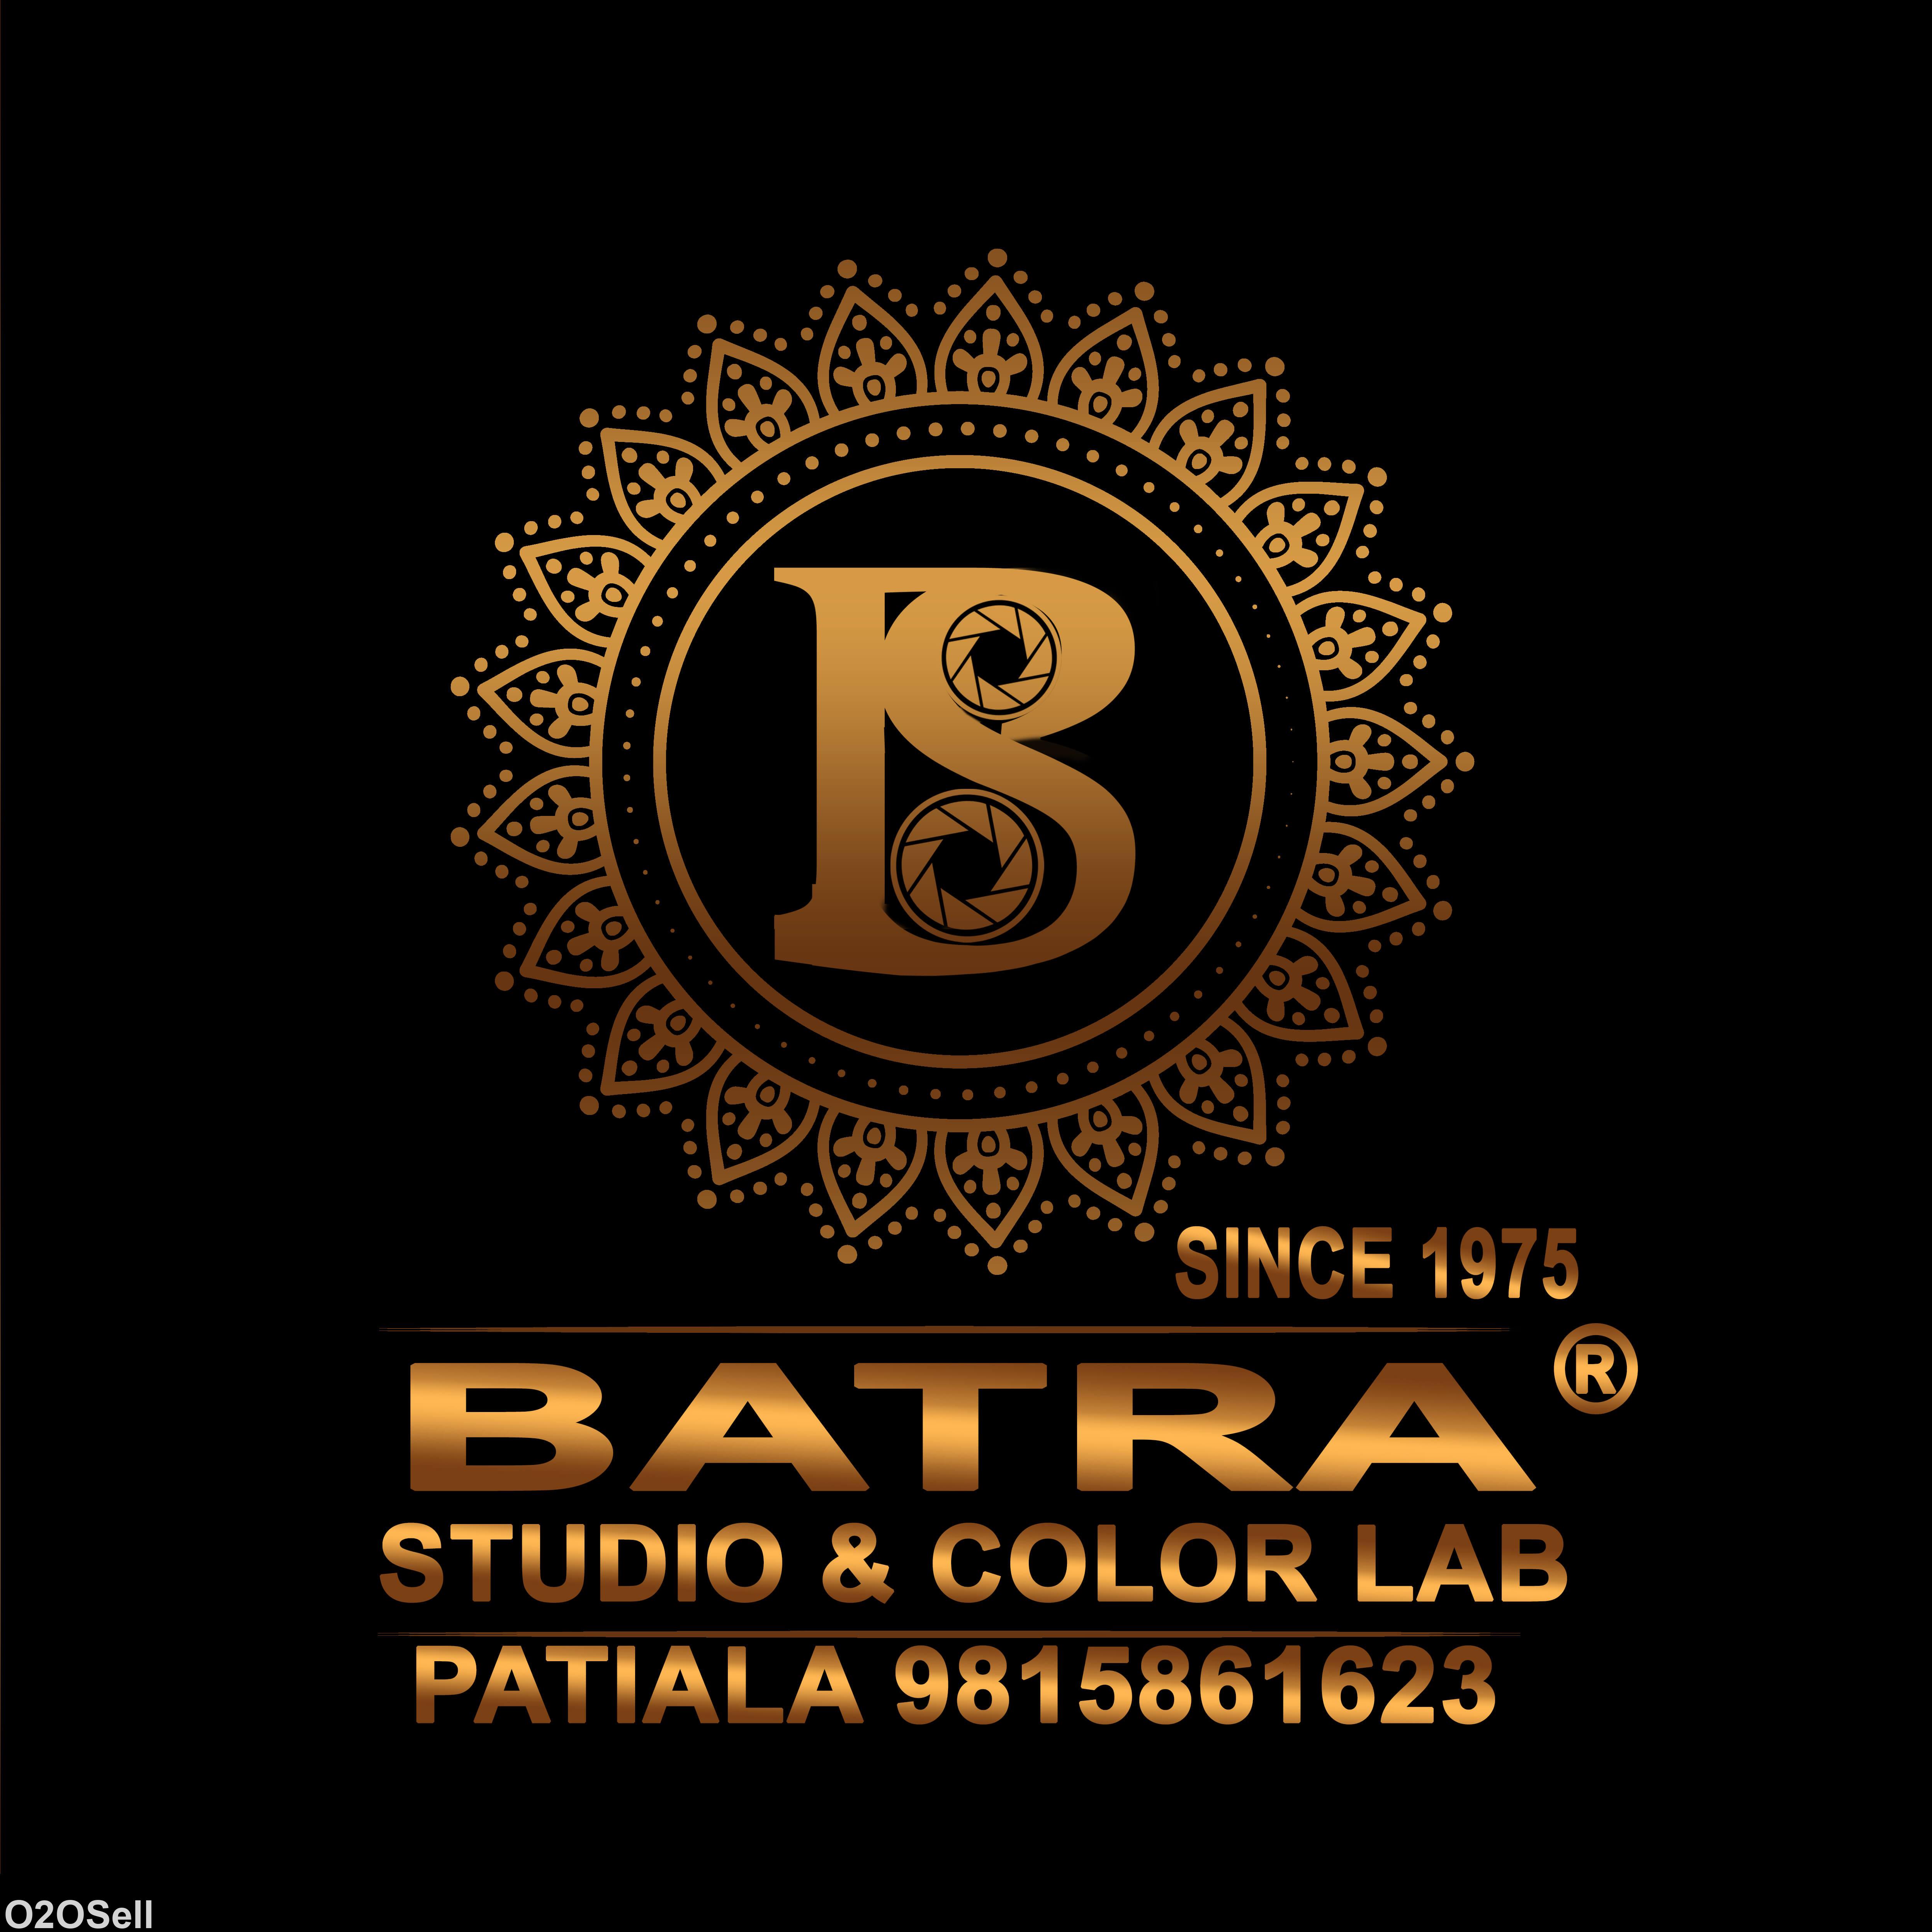 BATRA STUDIO & COLOR LAB - Profile Image